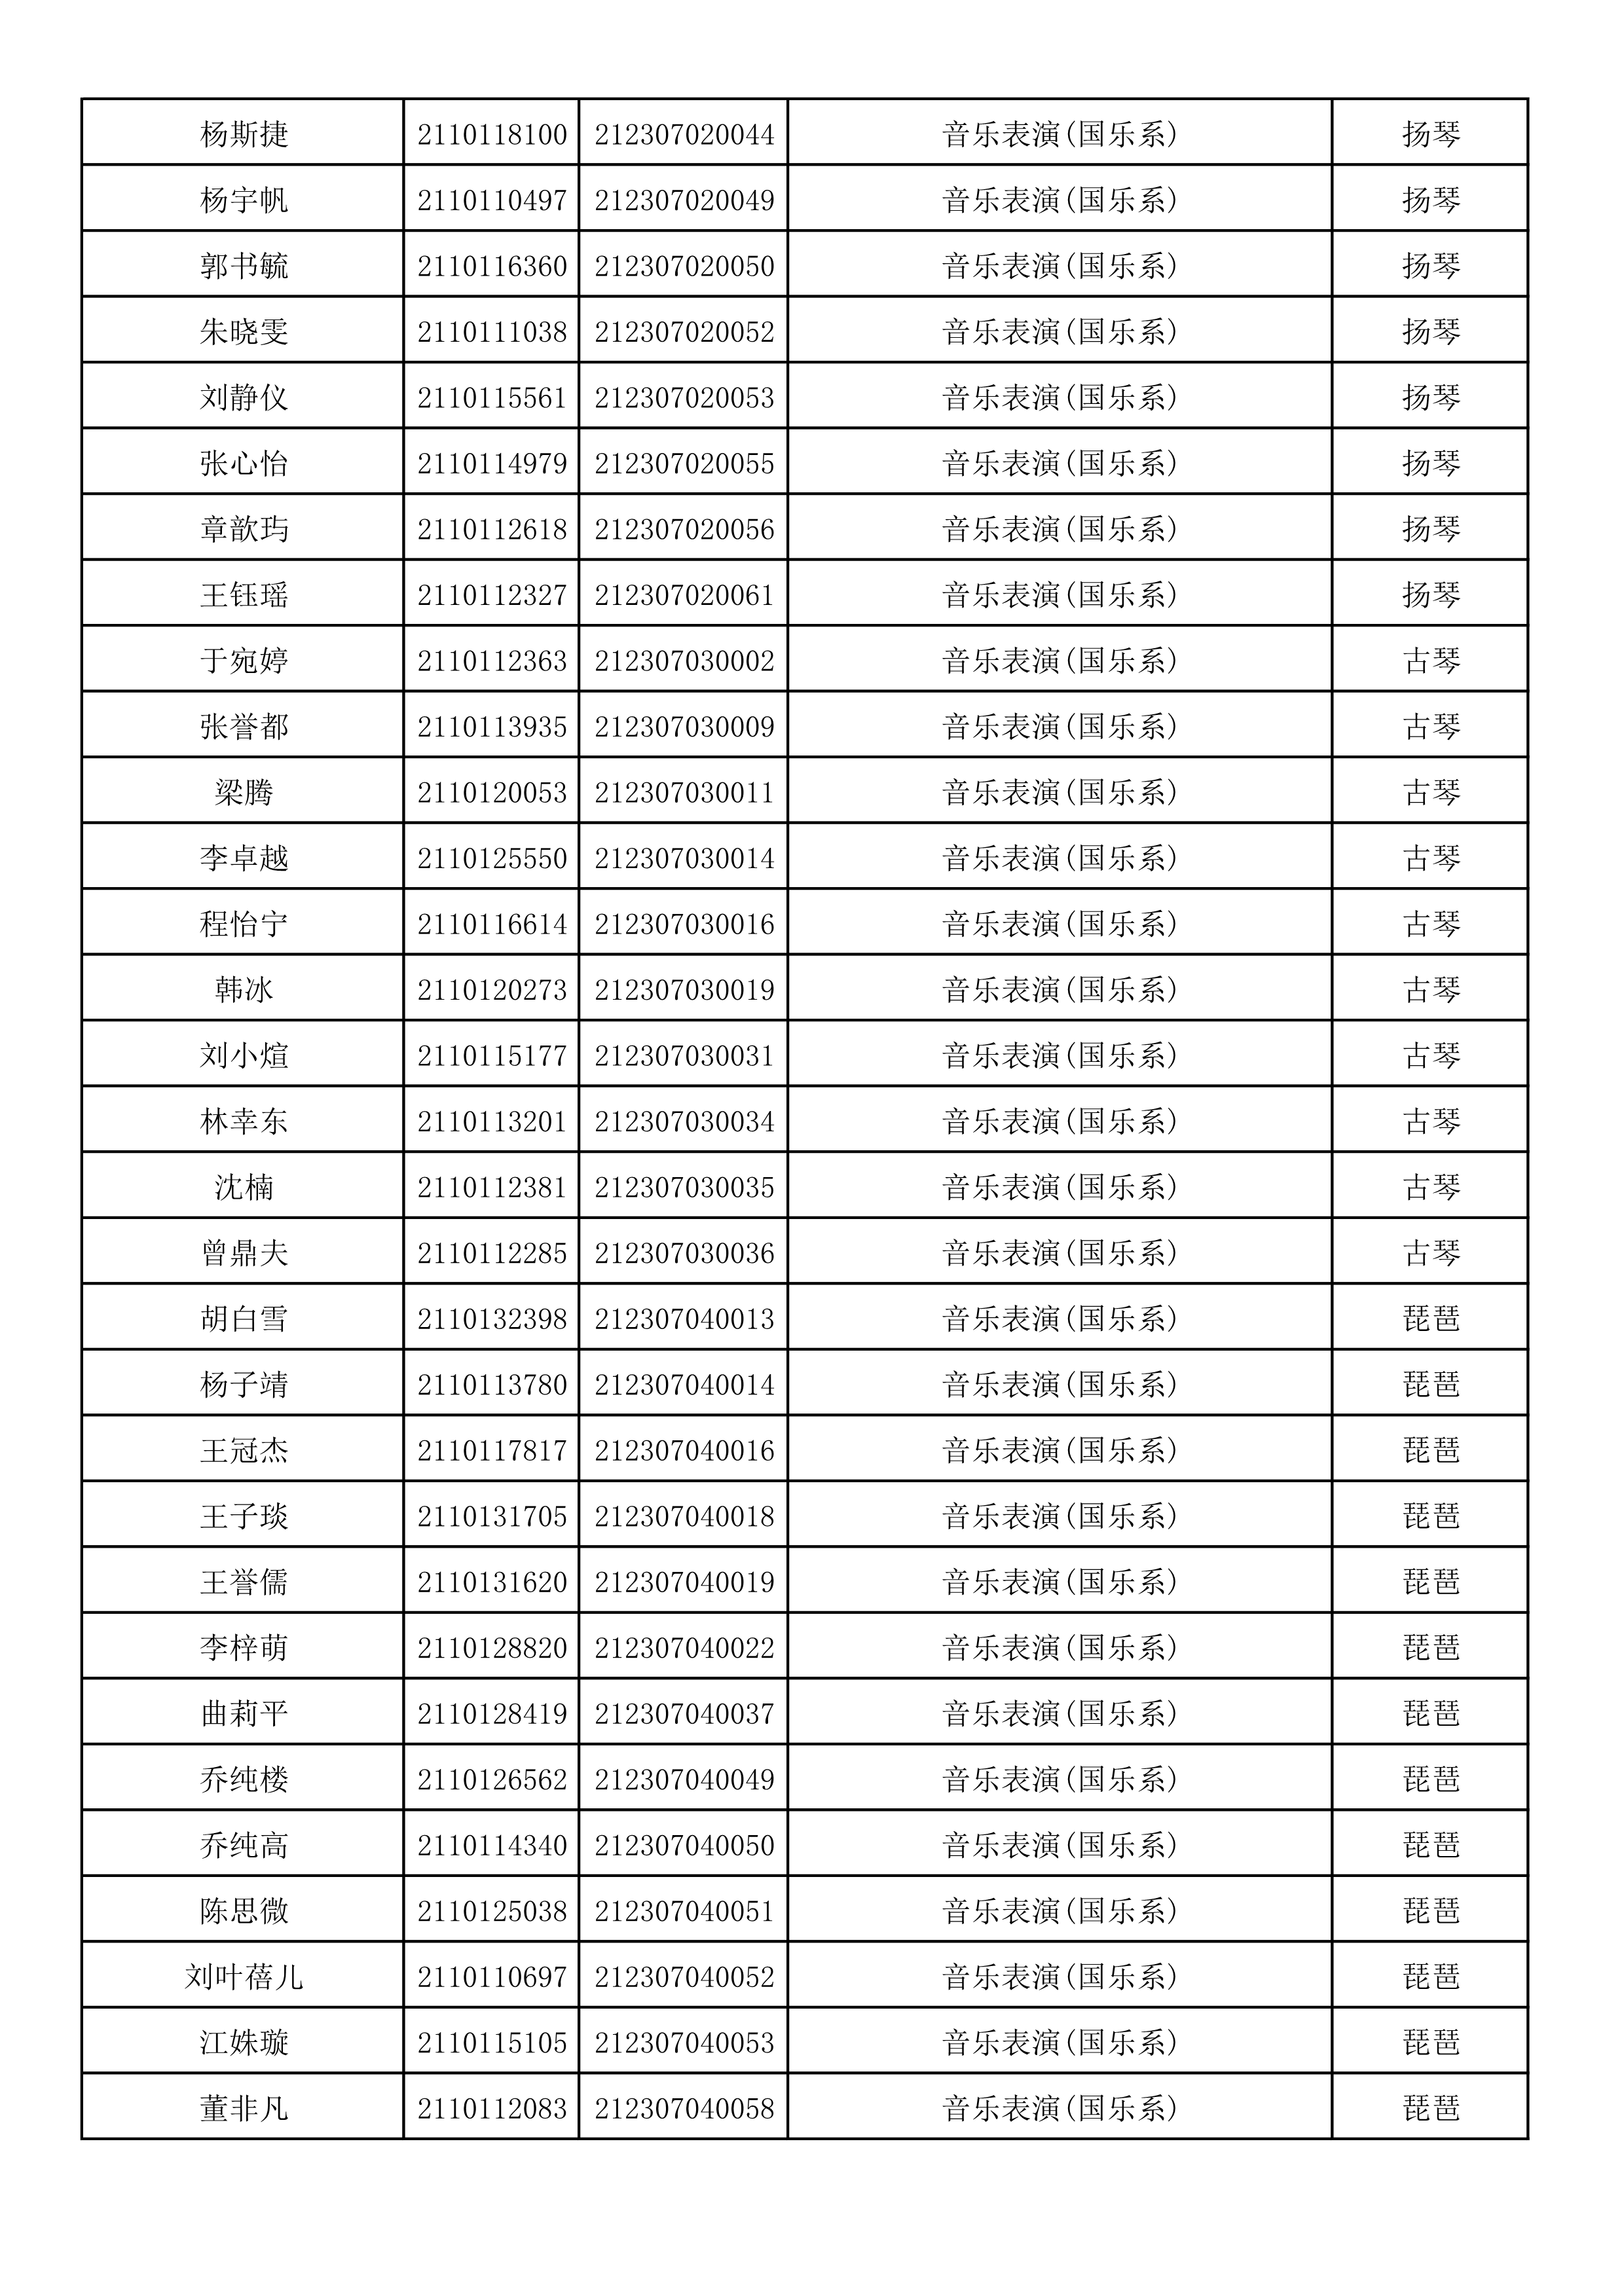 附件2：浙江音乐学院2021年本科招生专业校考初试合格考生名单_50.png